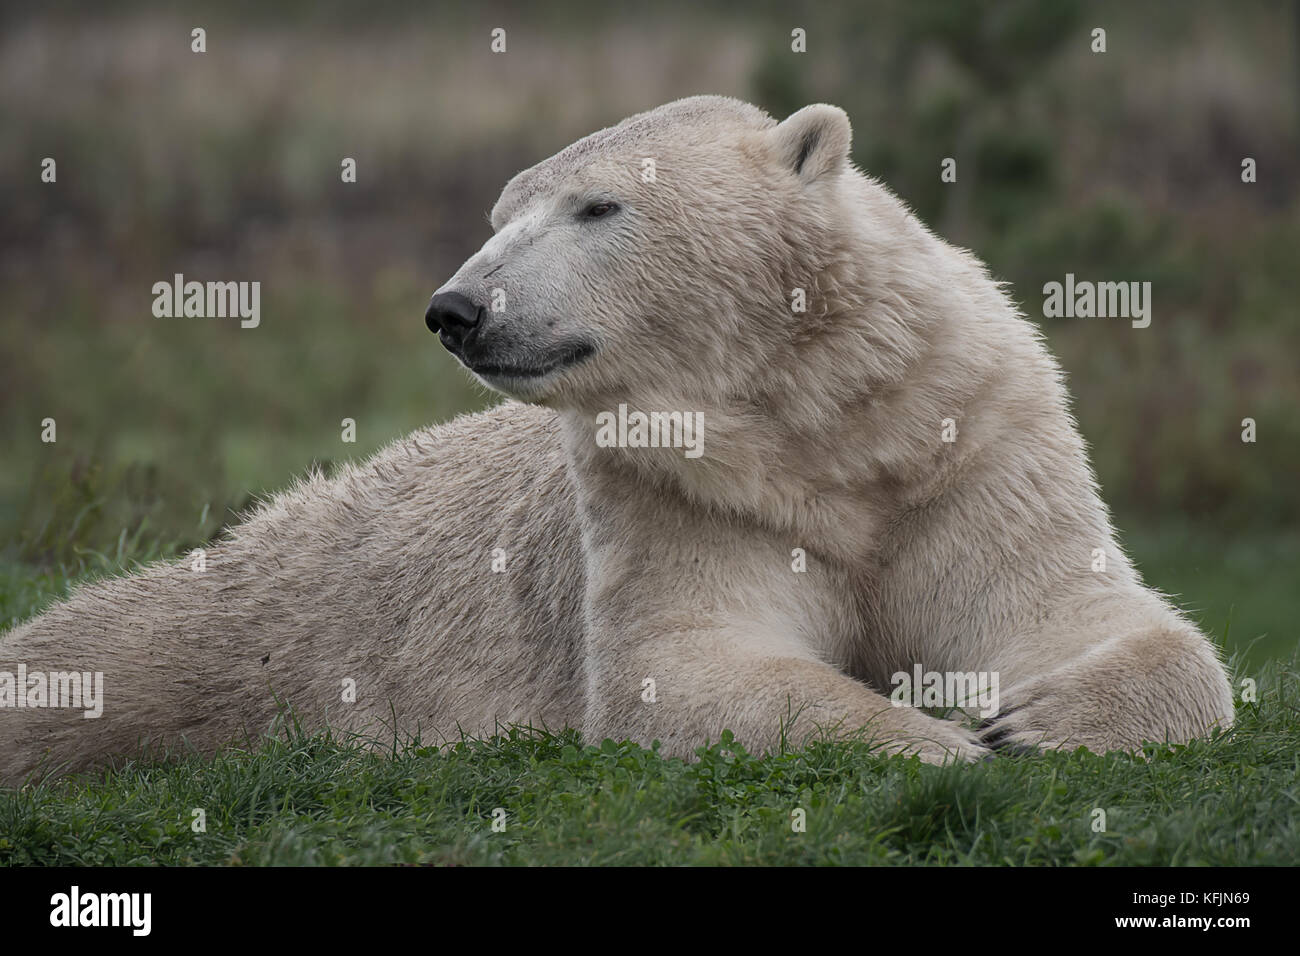 A very close photograph of a polar bear Stock Photo